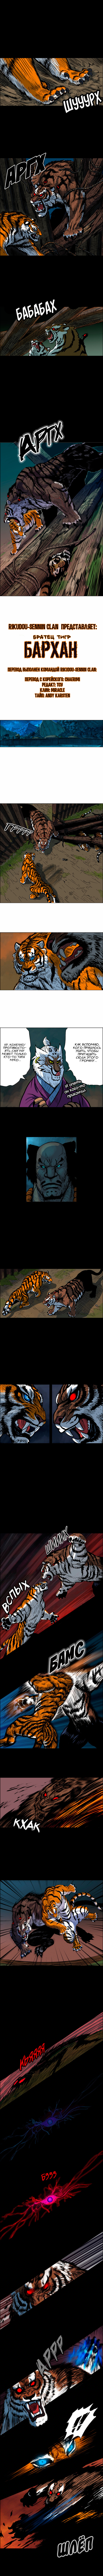 Братец тигр — Бархан 1 - 3 Гнев Муко